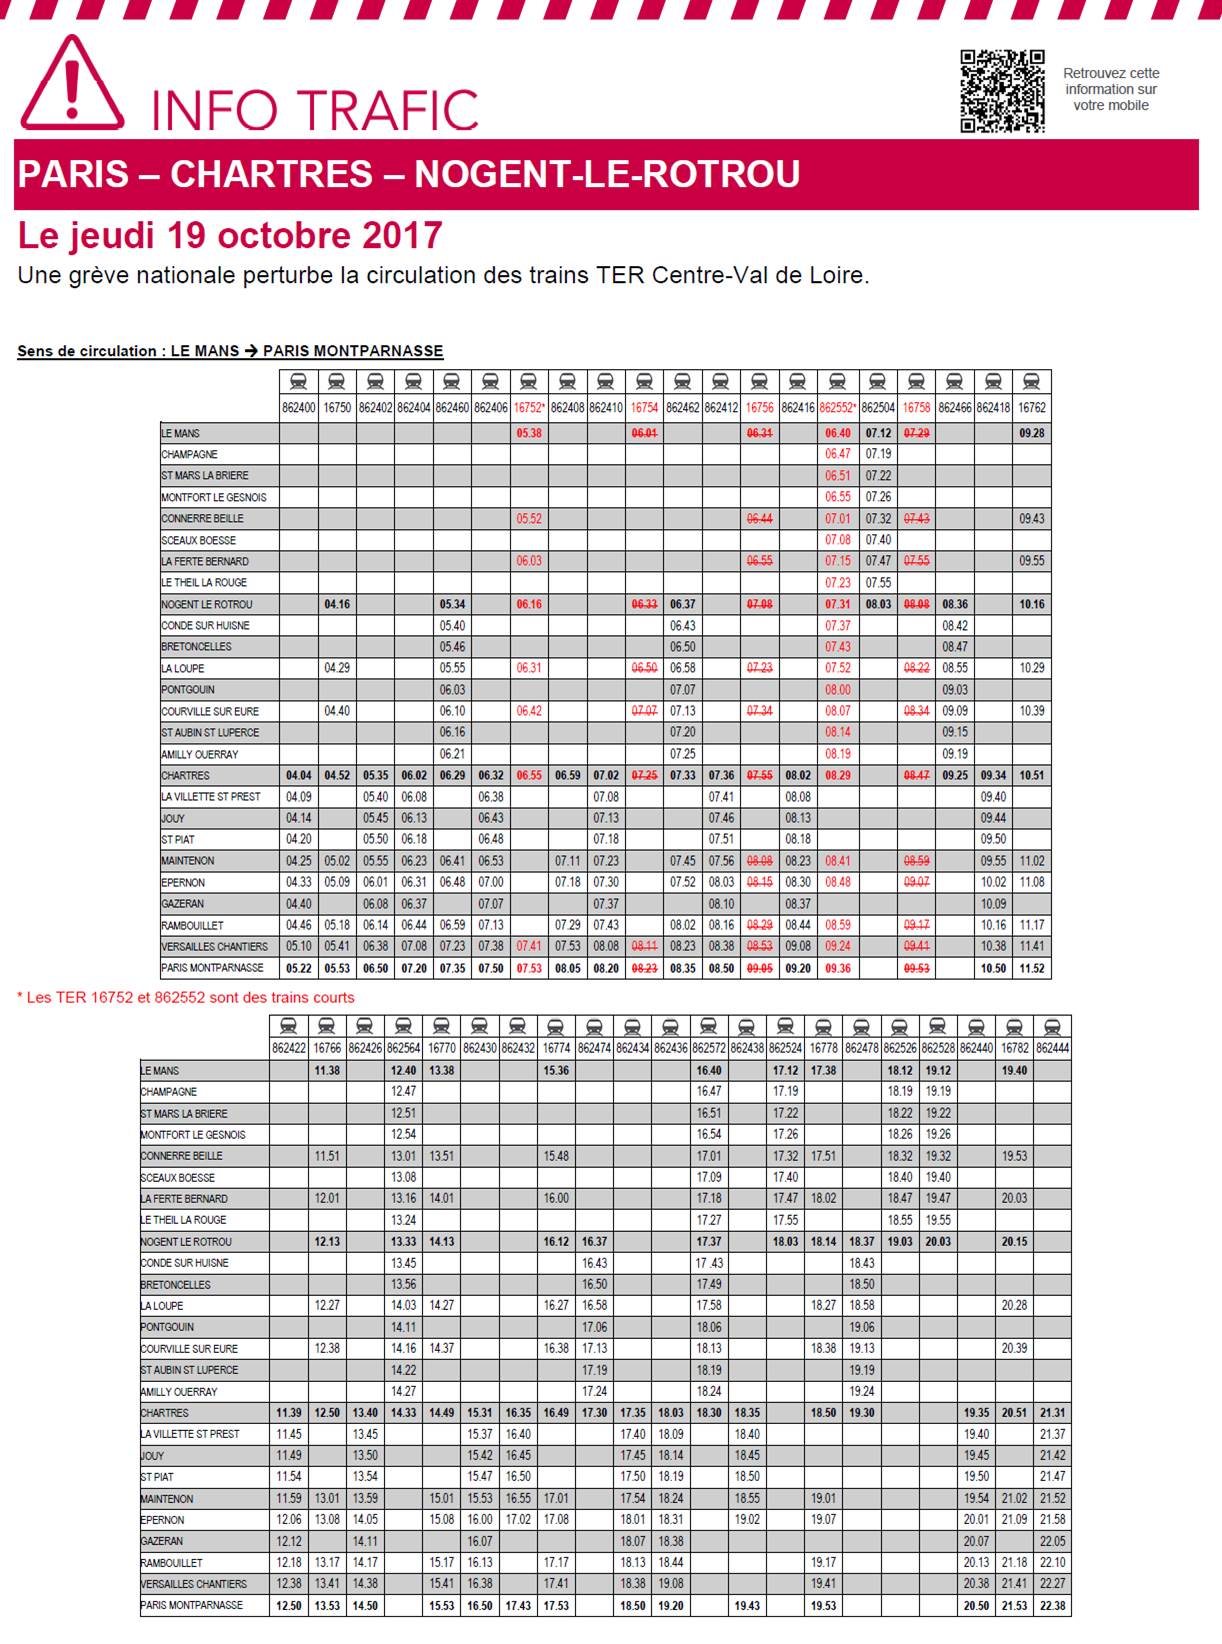 Horaire des TER - Grève du 19 octobre 2017